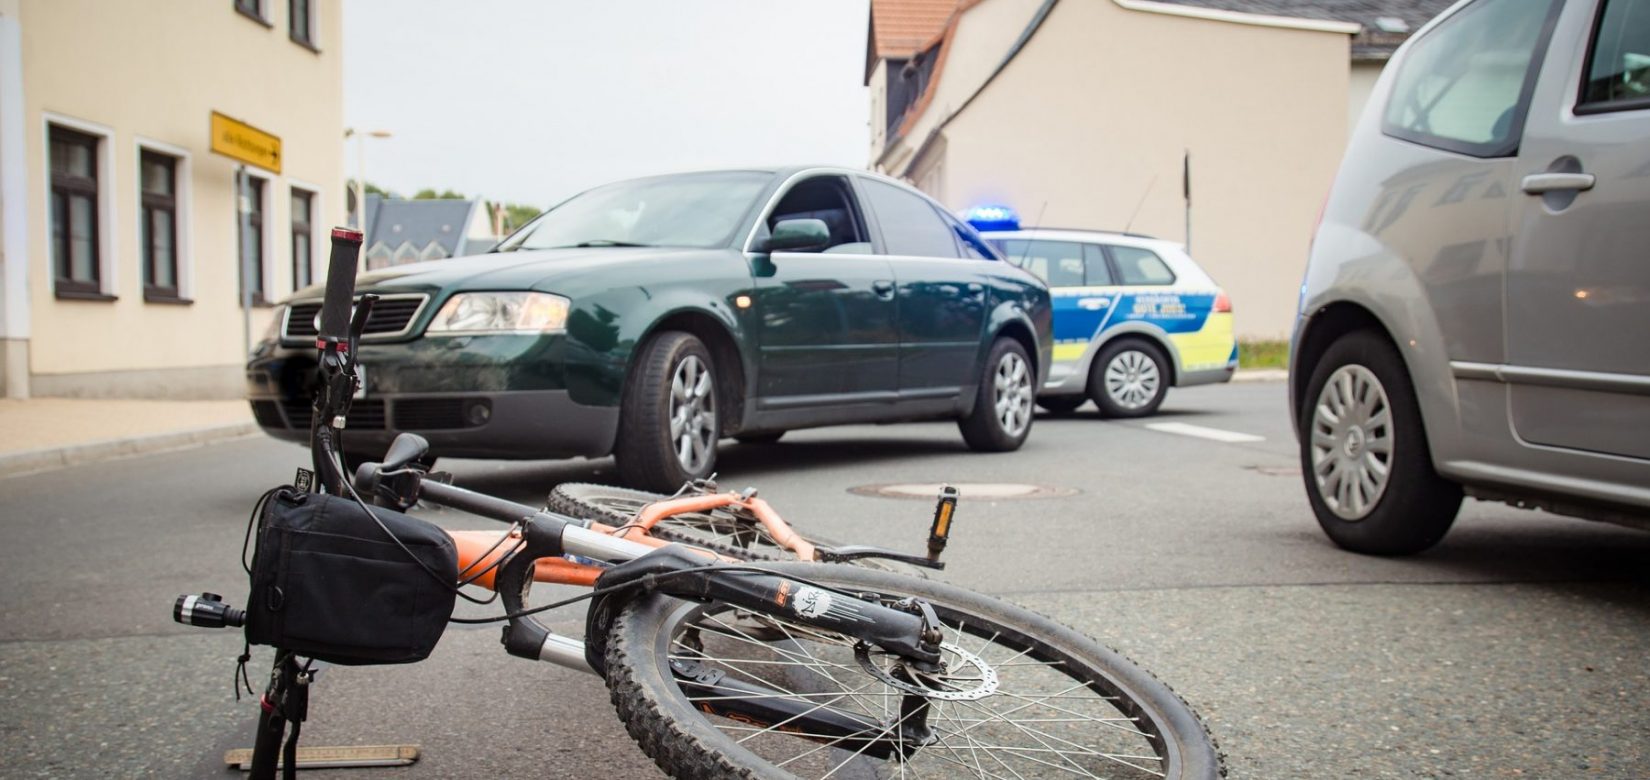 13χρονος παρασύρθηκε από αυτοκίνητο, ενώ έκανε ποδήλατο